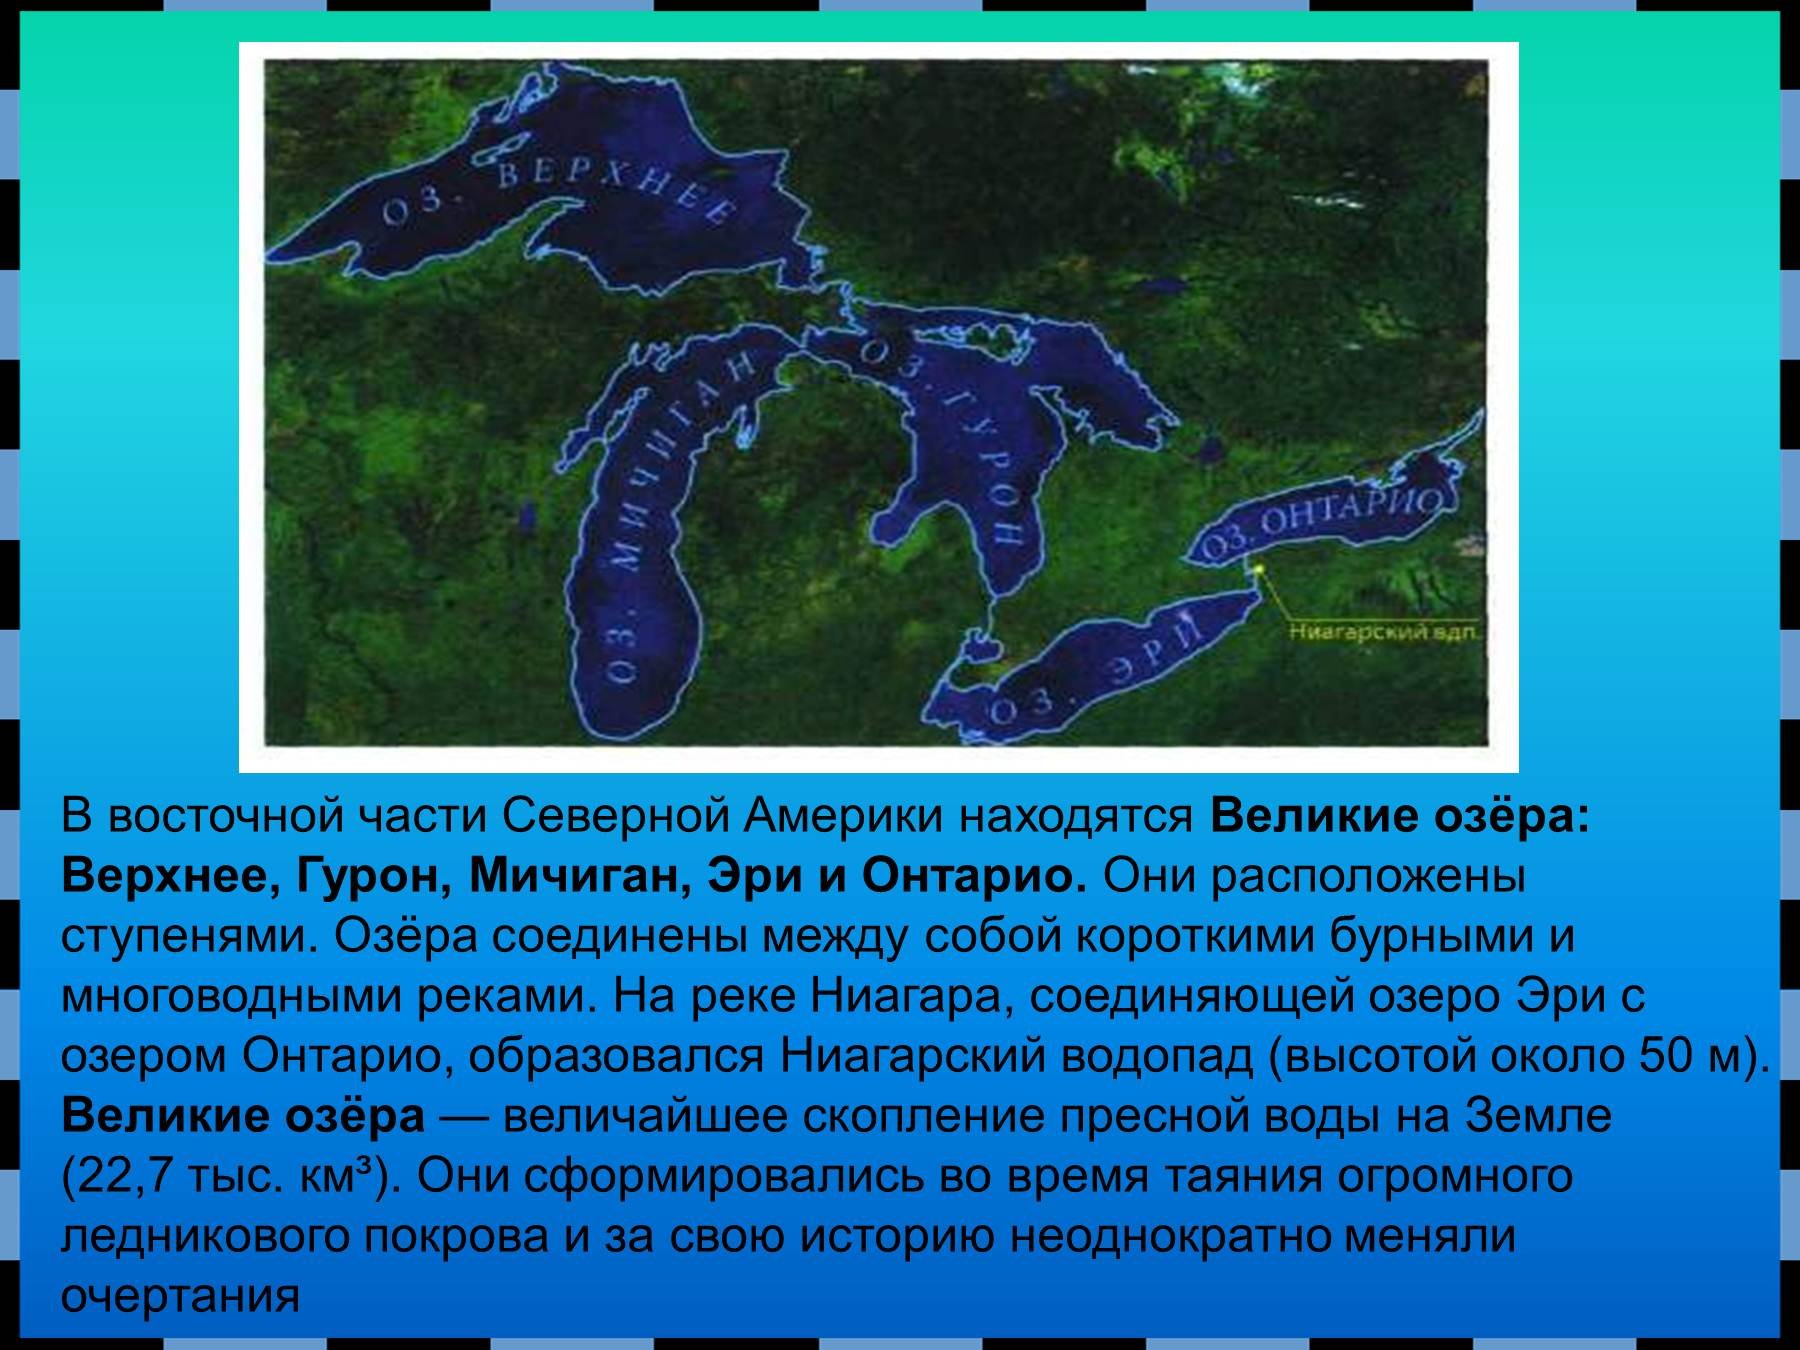 Перечислите озера северной америки. Великие озера верхнее озеро Гурон Мичиган Эри и Онтарио. Озеро Гурон Северная Америка. Озера: Великие озера (верхнее Гурон Мичиган Эри Онтарио) на карте. Озеро верхнее Гурон Мичиган Эри.